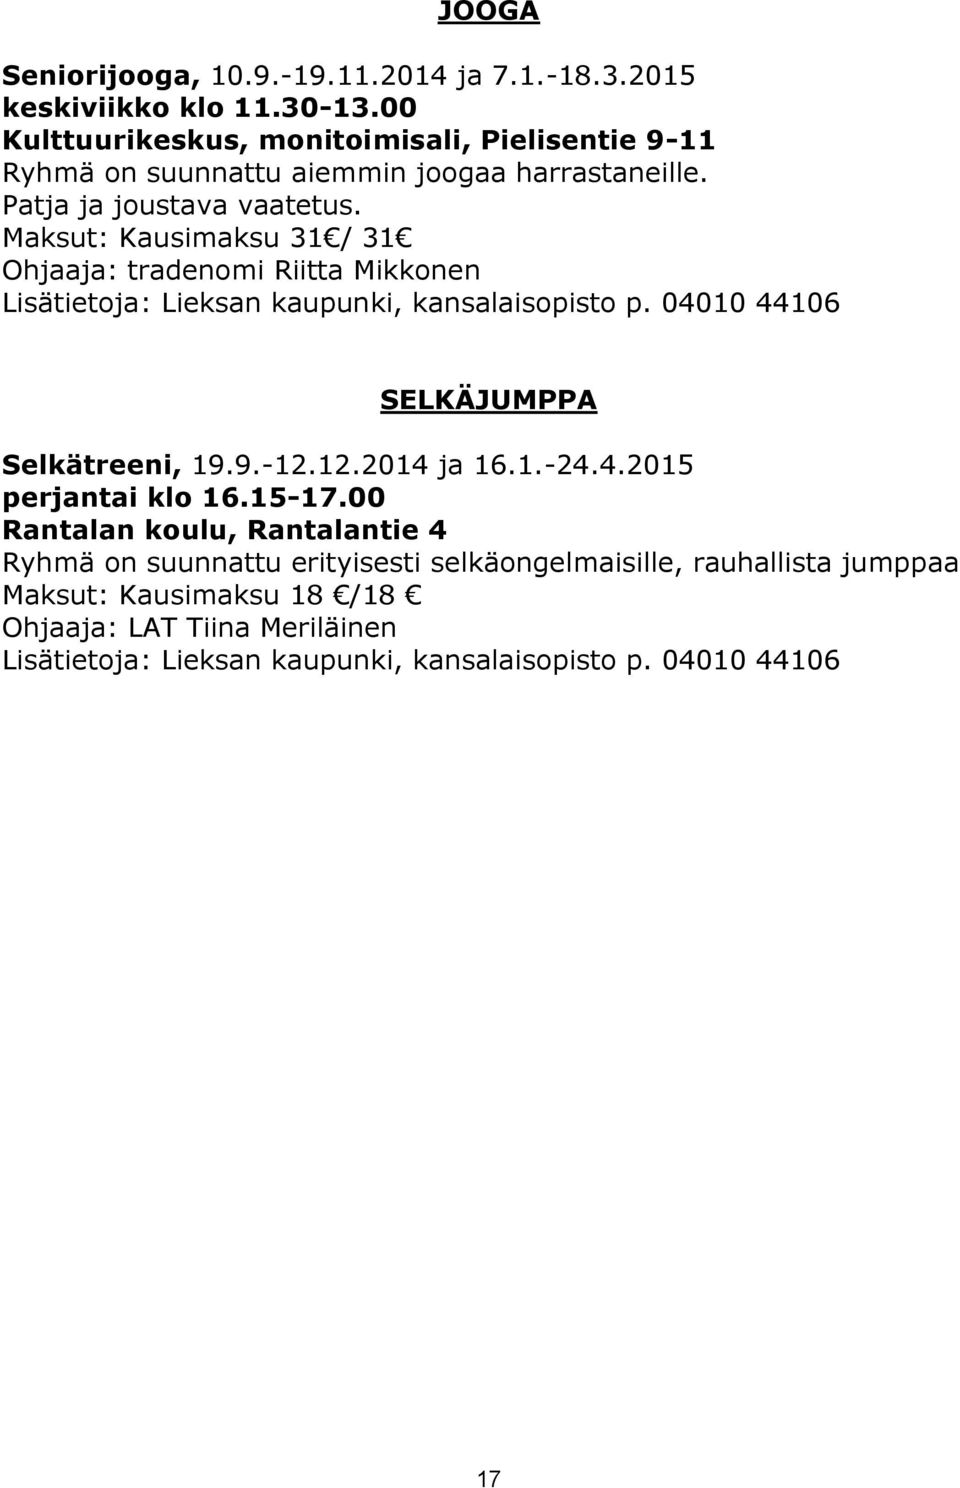 Maksut: Kausimaksu 31 / 31 Ohjaaja: tradenomi Riitta Mikkonen Lisätietoja: Lieksan kaupunki, kansalaisopisto p. 04010 44106 SELKÄJUMPPA Selkätreeni, 19.9.-12.